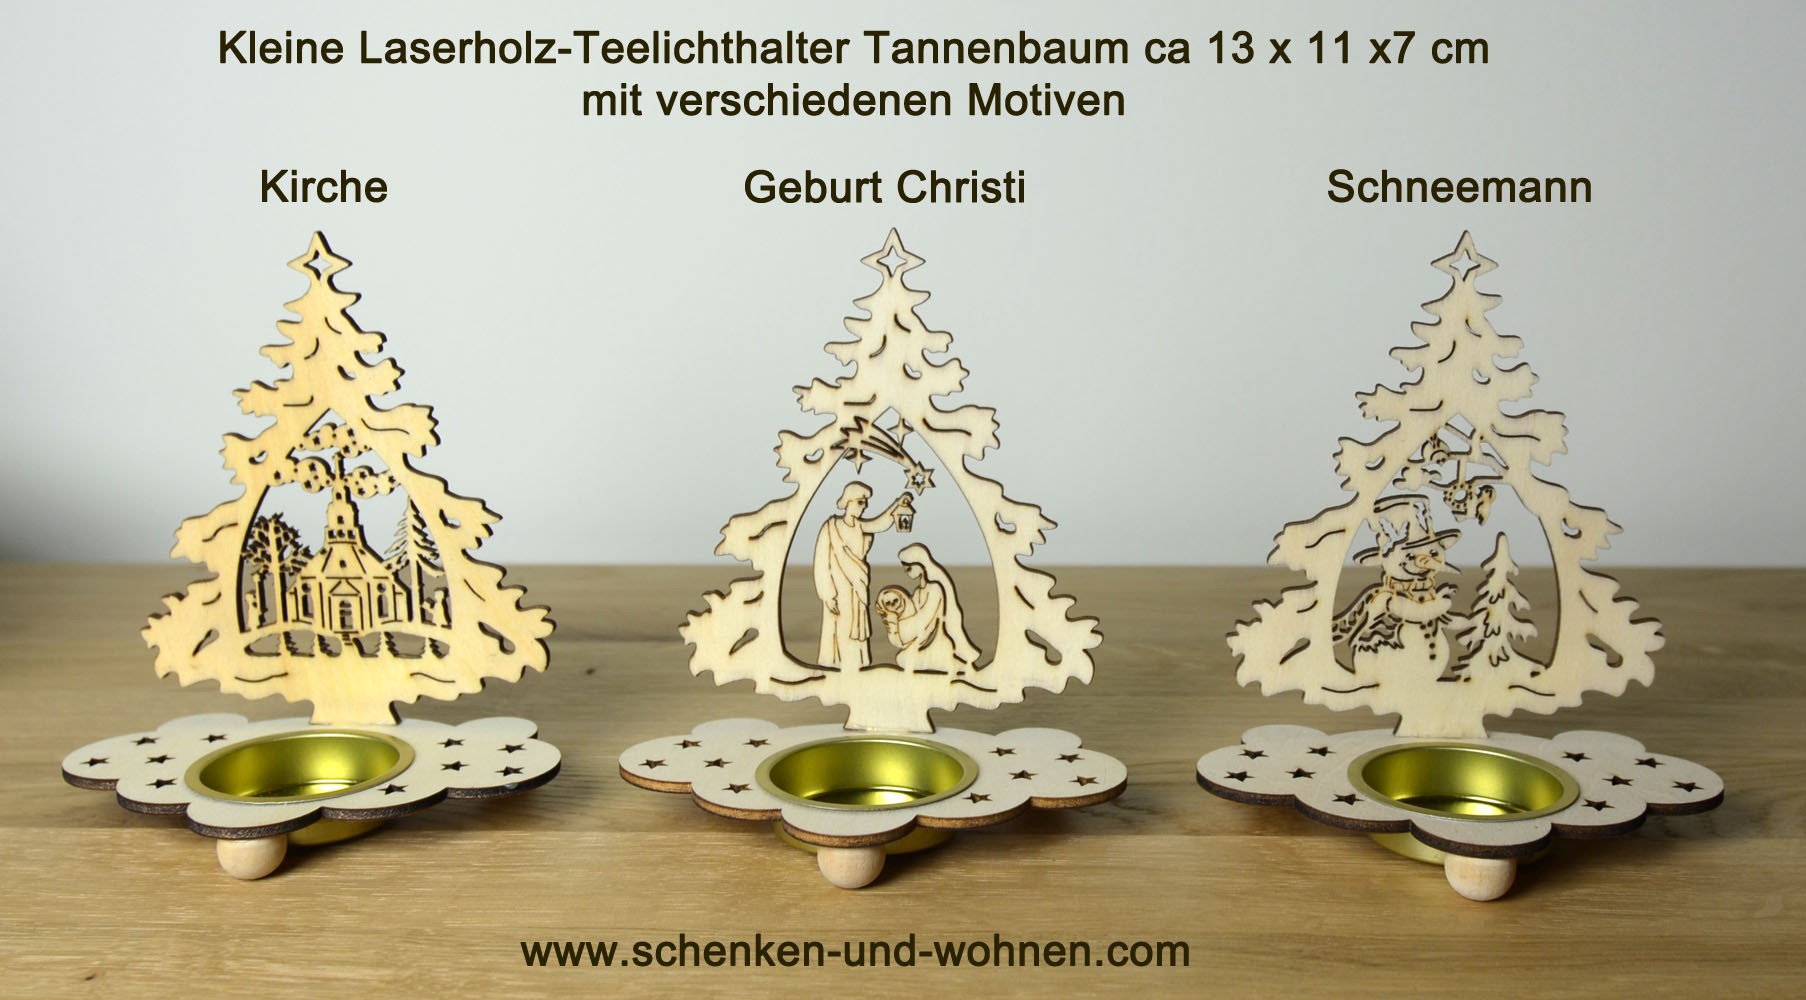 Laserholz-Teelichthalter Tanne mit Motiv Christi Geburt 13 x 11 x 7 cm (HxBxT)